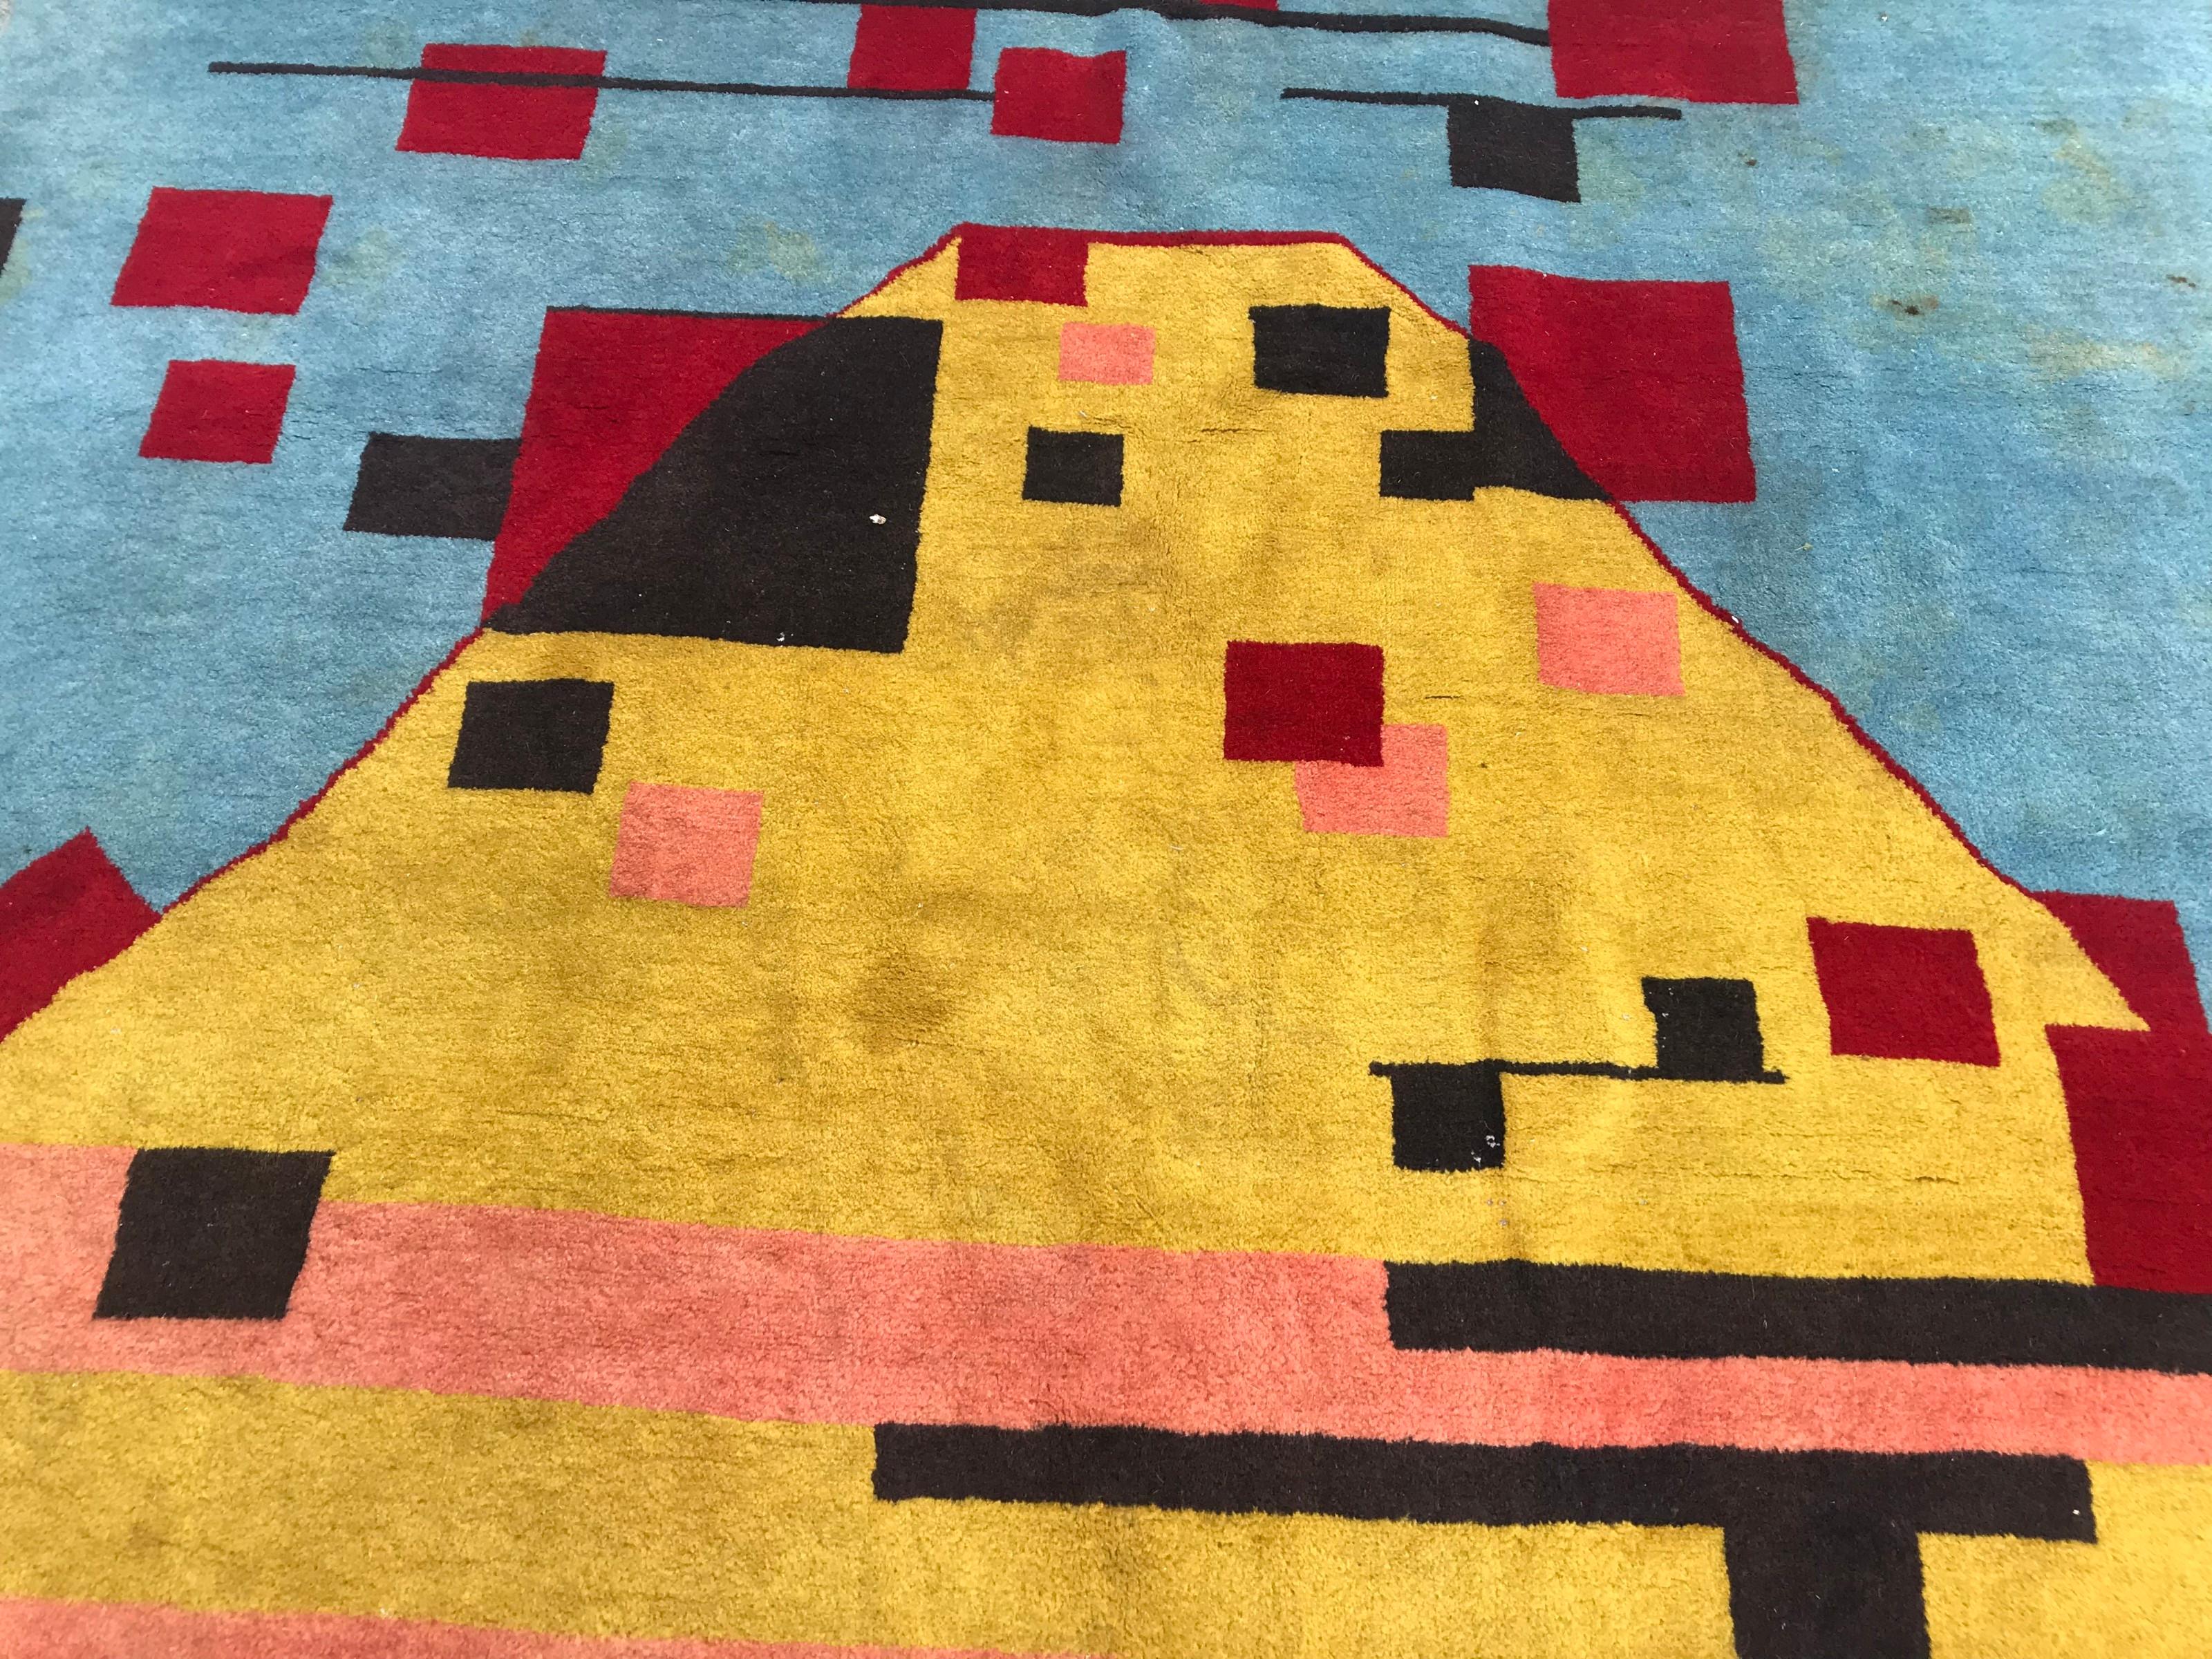 Magnifique tapis contemporain moderne avec un joli design géométrique et des couleurs bleu, jaune et rouge, finement noué à la main avec du velours de laine sur une base de coton.

✨✨✨
